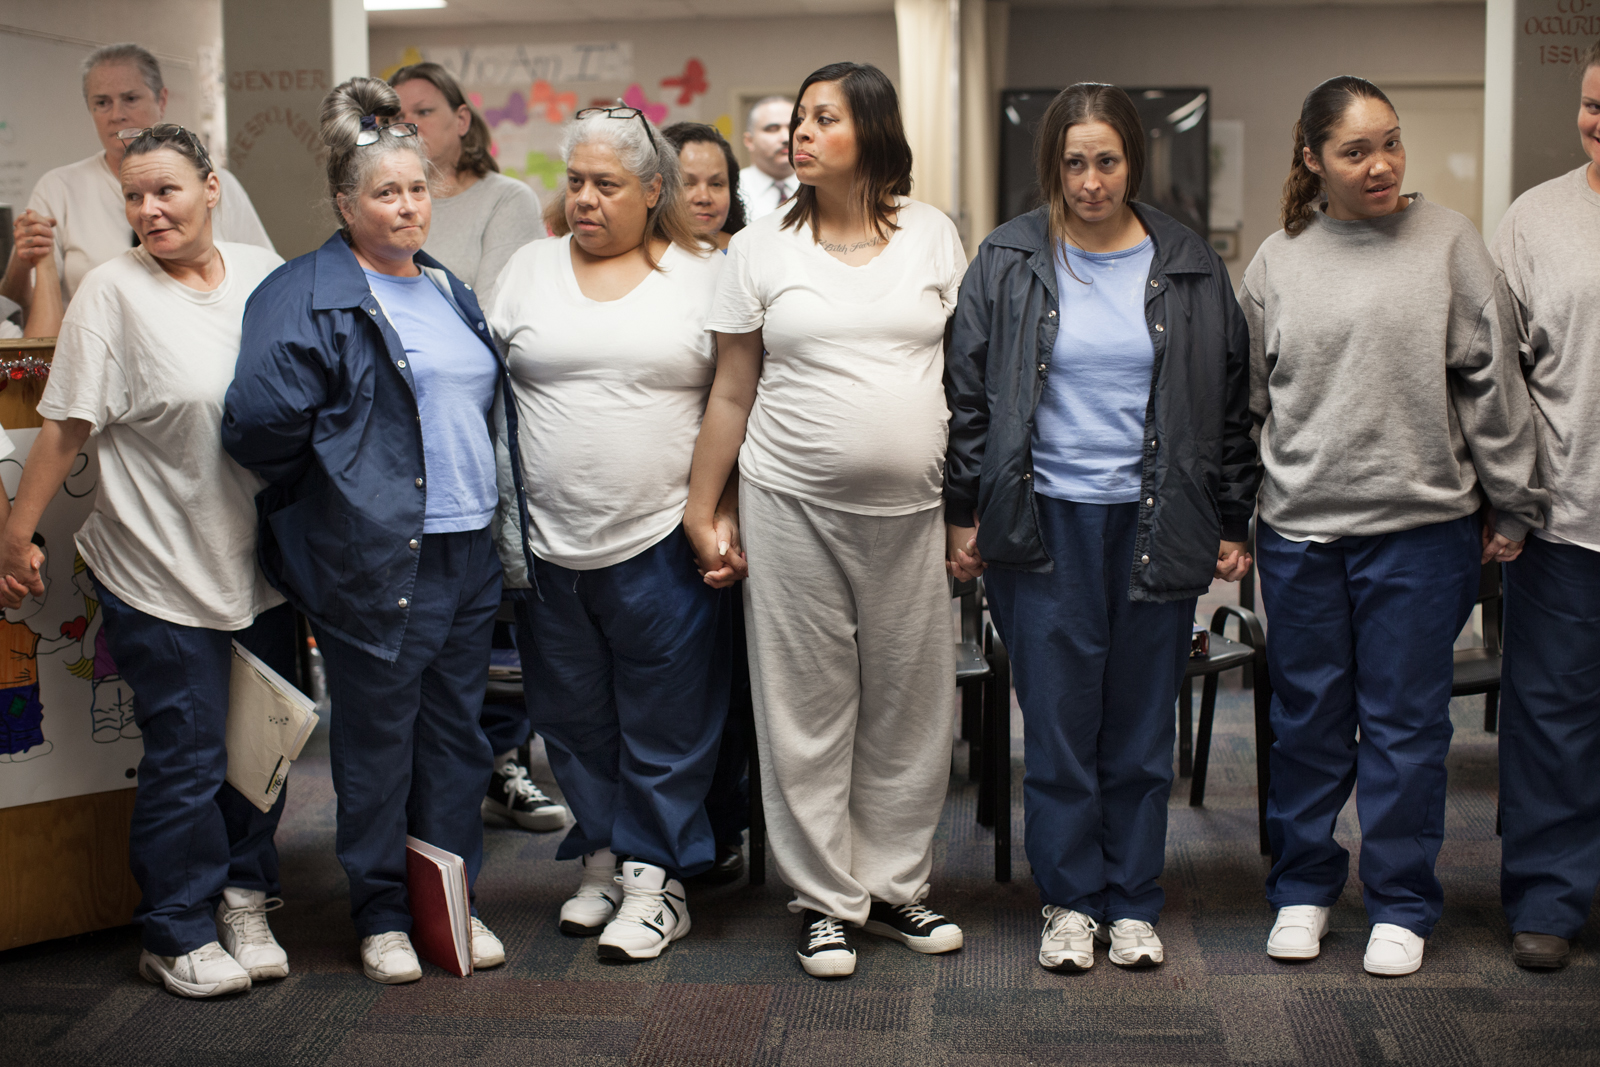 Zdjęcie 5 kobiet uwiezionych w areszcie, które doatkowo są w ciąży. Połowa z nich ubrana jest na granatowo, druga na beżowo.